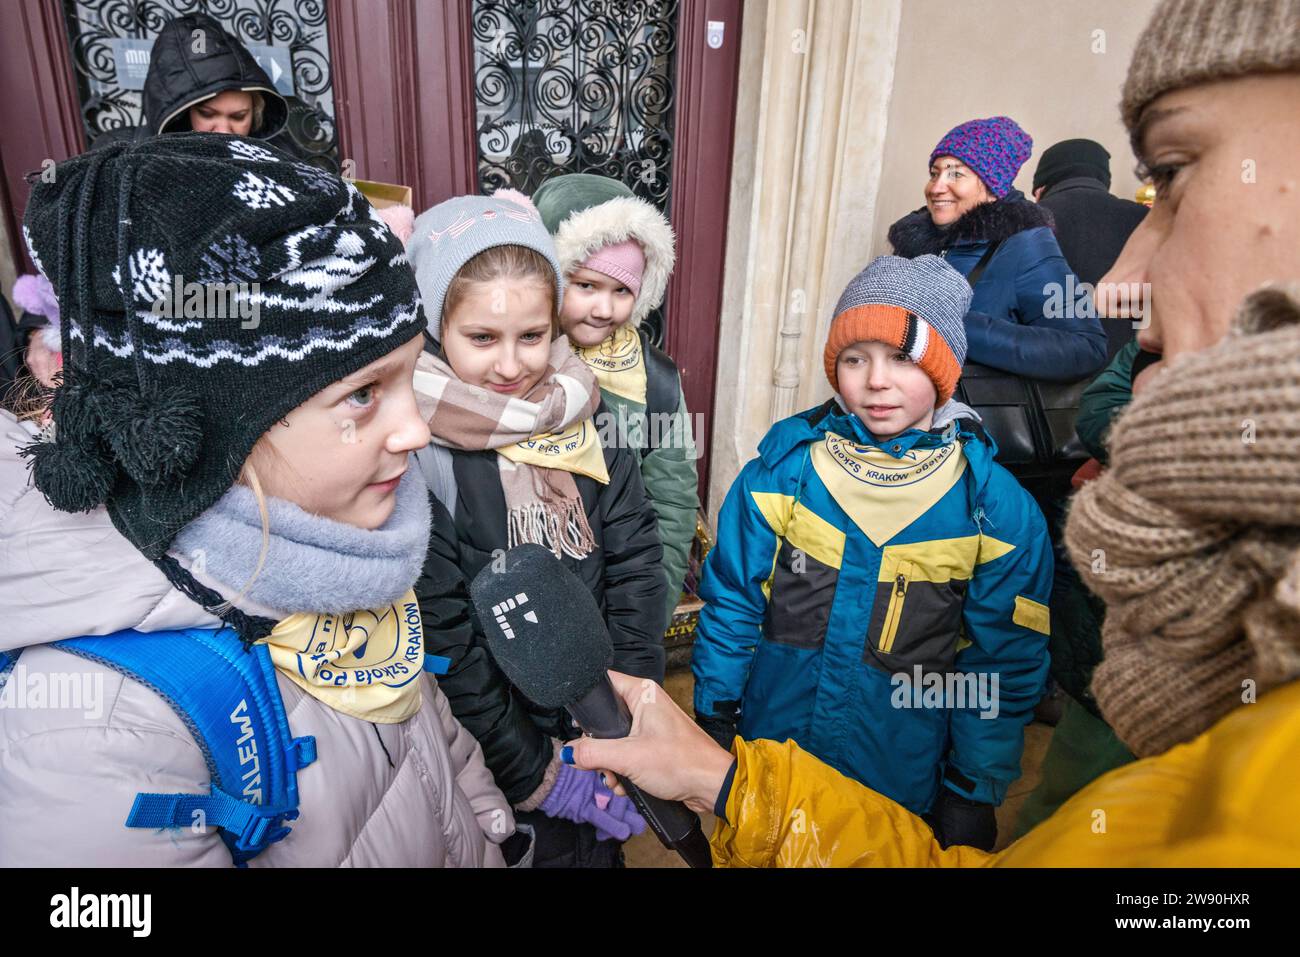 Reporter, der Kinder in der Nähe von Szopka (Weihnachtskrippe) interviewt, die sie in ihrer Grundschule gemacht haben, auf der Eröffnung des jährlichen Wettbewerbs im Dezember, der Veranstaltung, die in die Liste des UNESCO-Weltkulturerbes aufgenommen wurde, in den Arkaden von Sukiennice (Tuchhalle), dem Hauptmarkt in Kraków, Polen Stockfoto